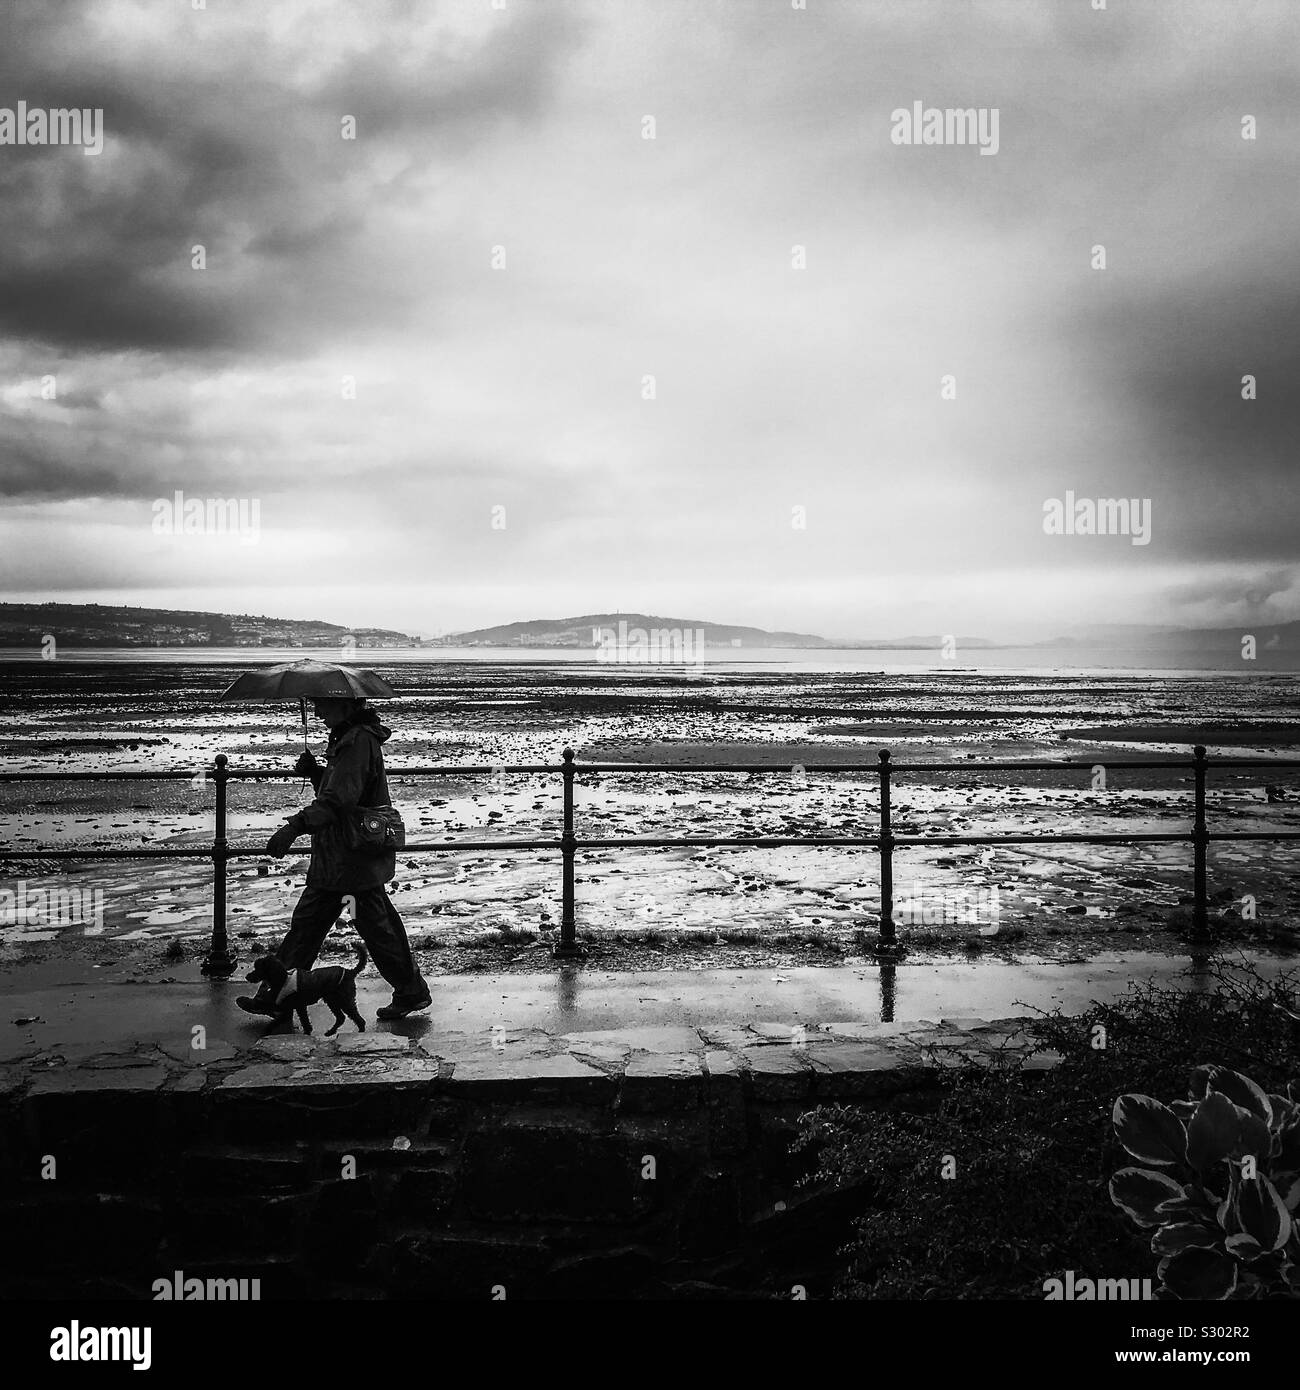 Ein strammer Spaziergang am Meer entlang der Küste entlang der Promenade direkt am Meer in feuchten regnerischen Tag Wetter einen Regenschirm mit einem Hund neben an der Ferse Stockfoto